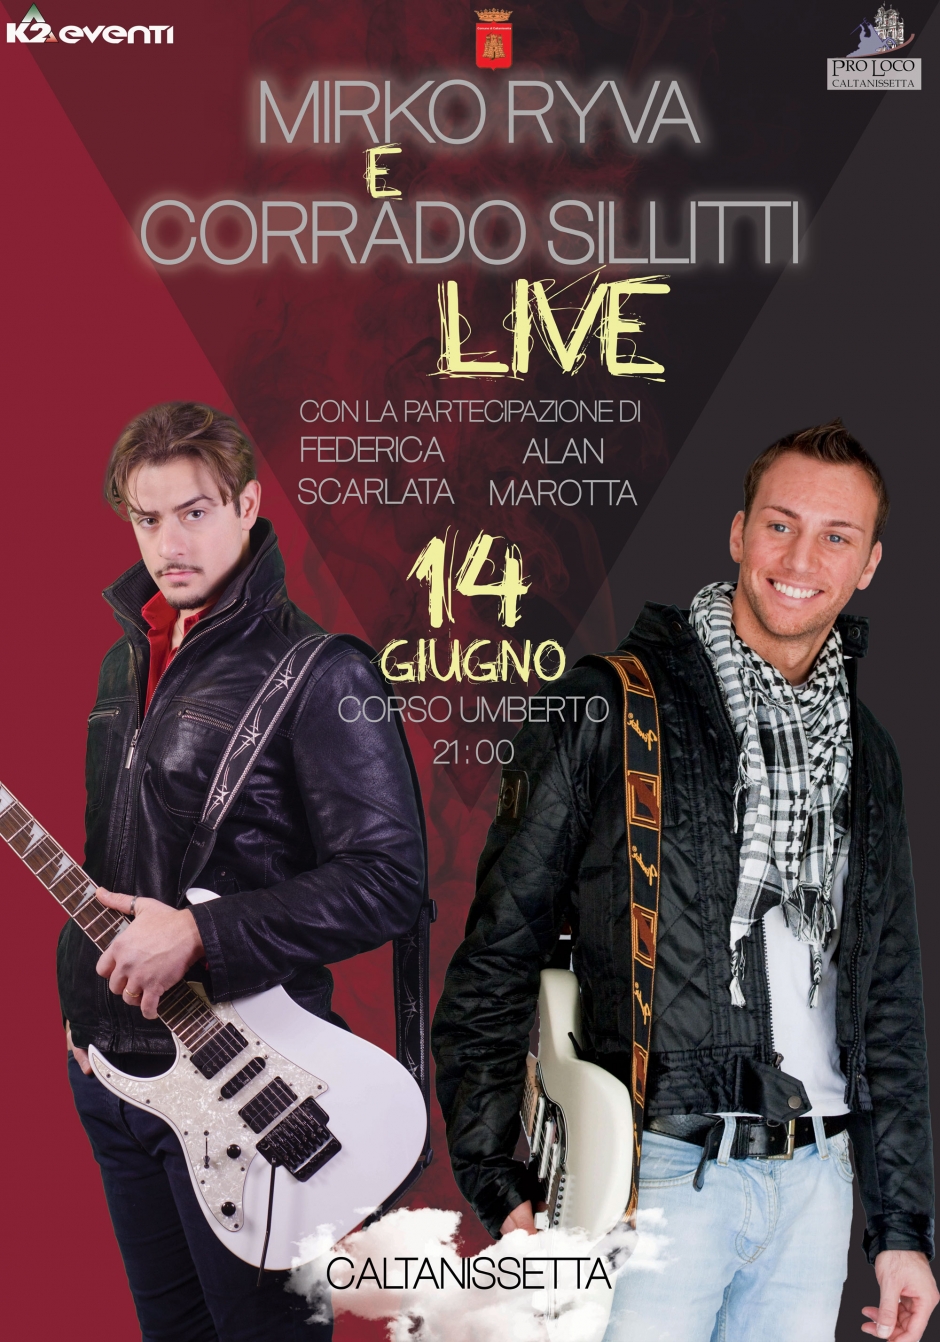 Corrado Sillitti e Mirko Ryva in concerto a Caltanissetta!